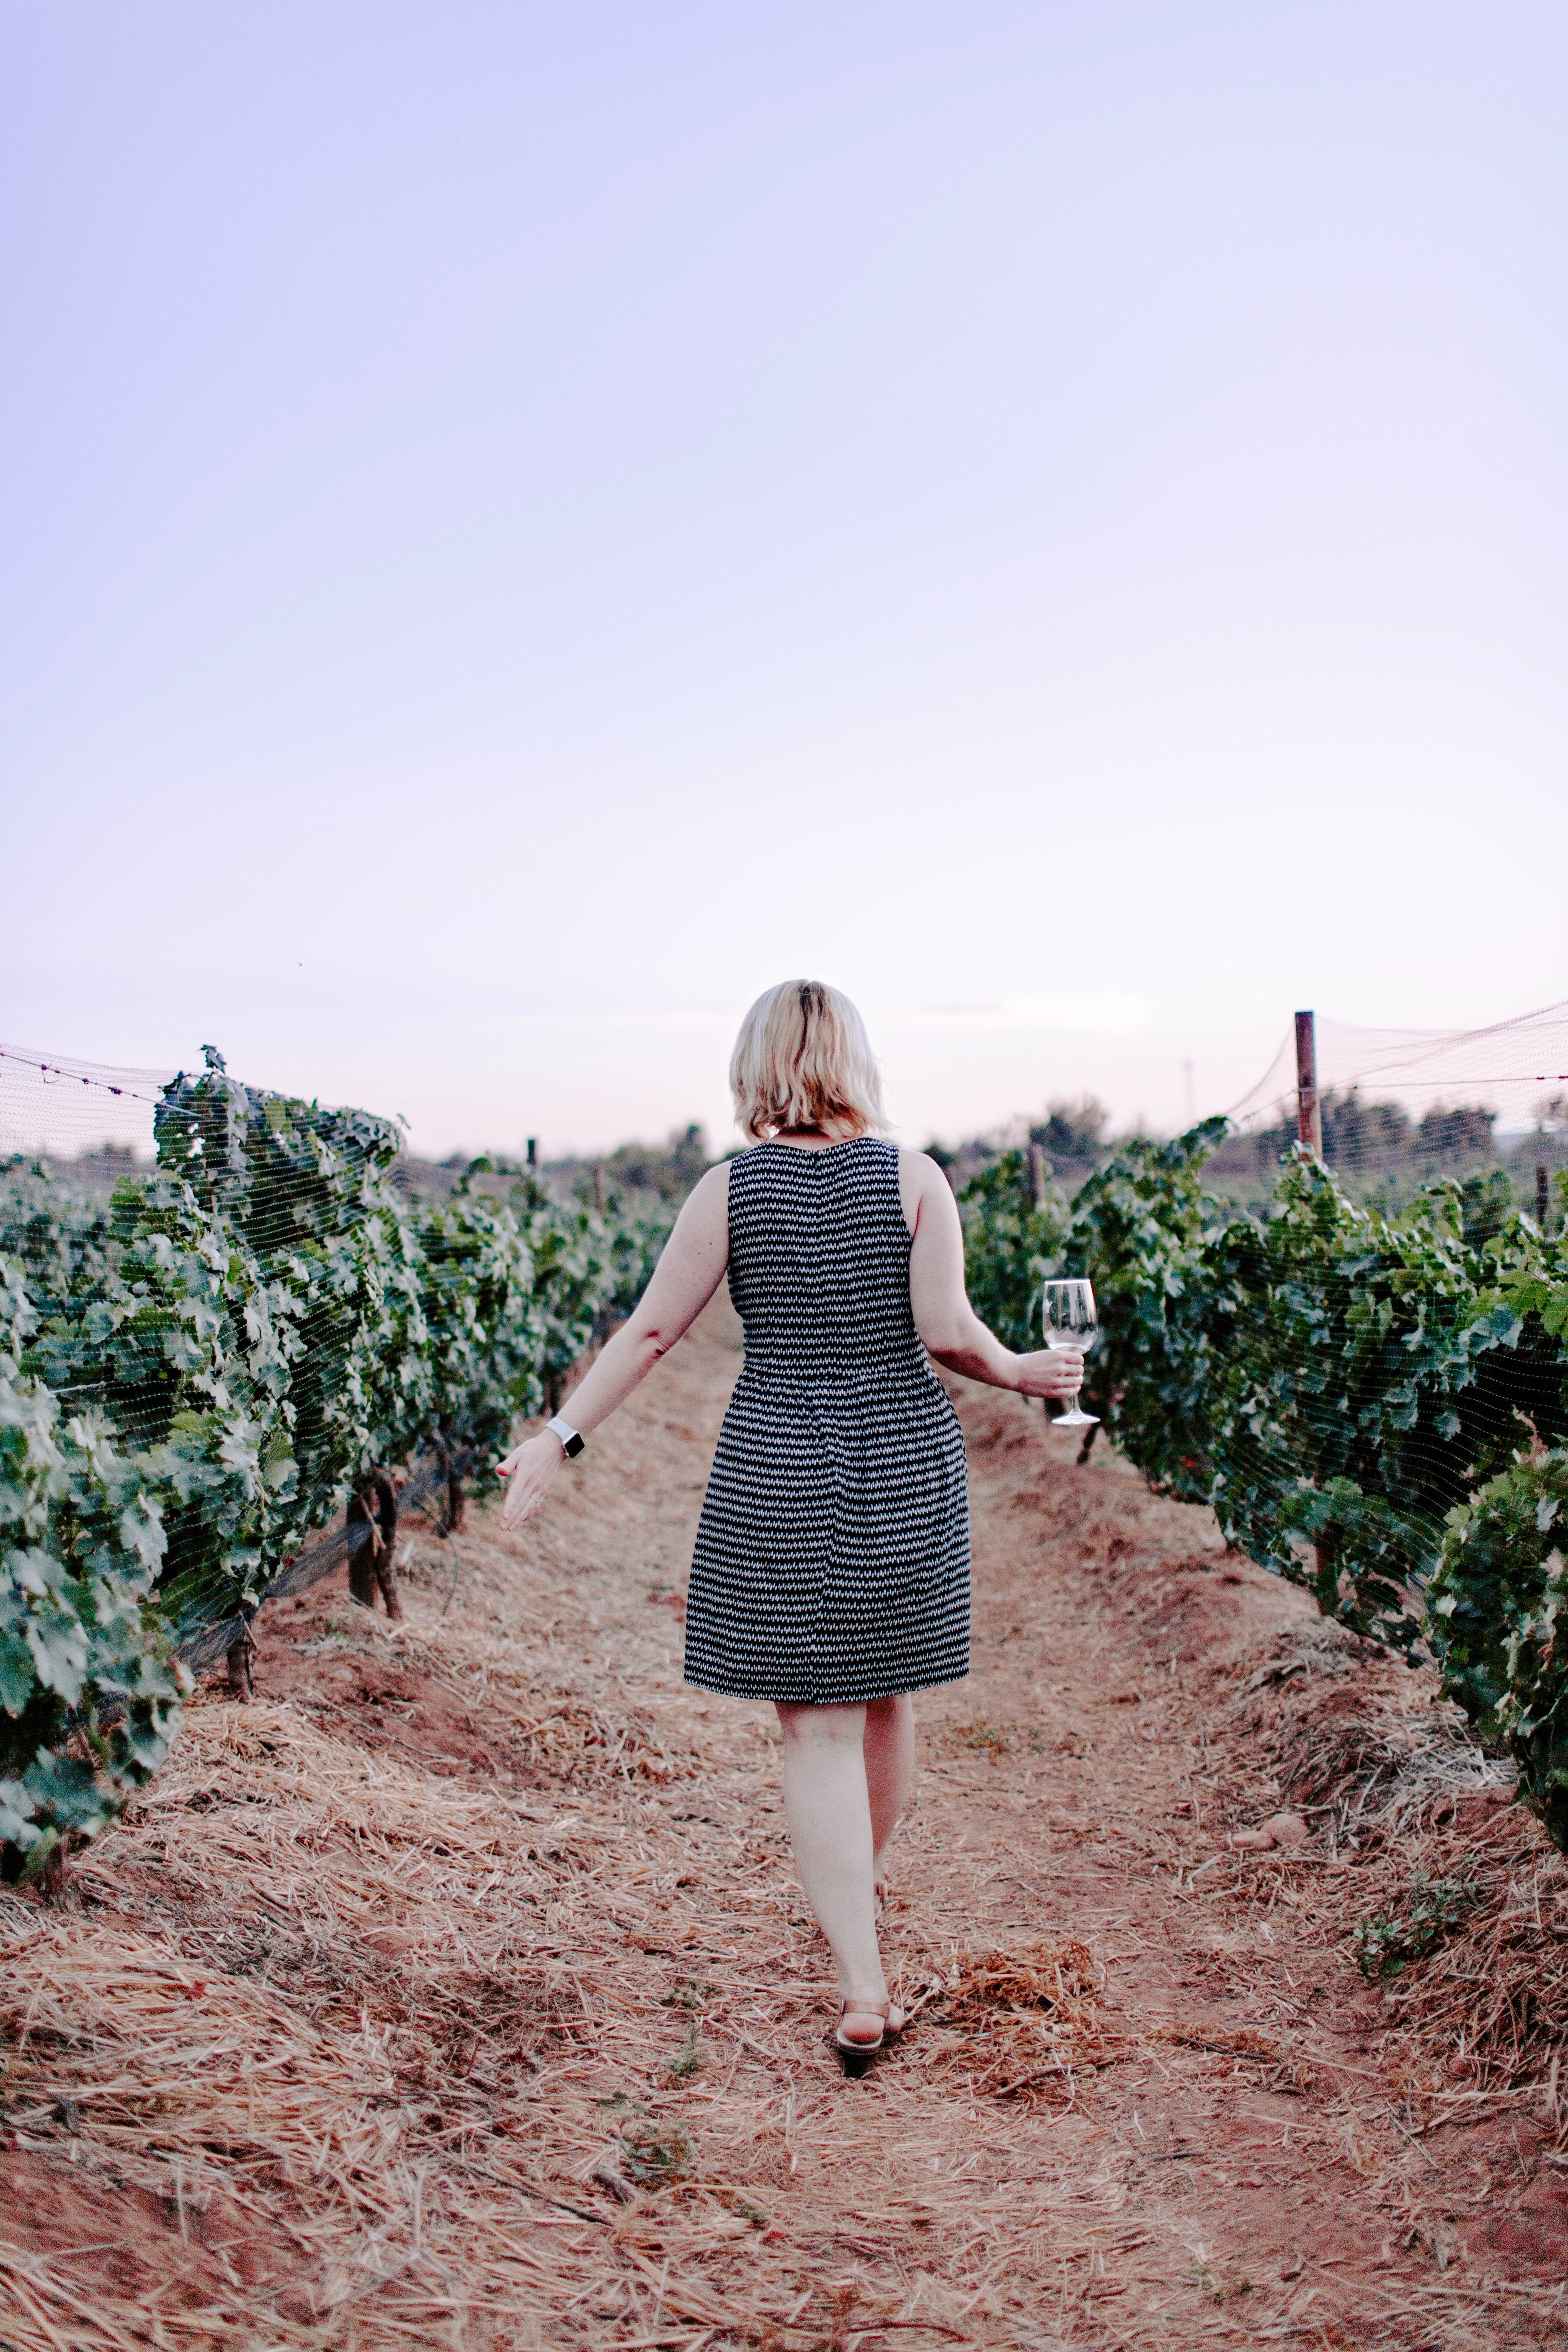 A woman wearing a dress walking through wine fields, wine glass in hand.